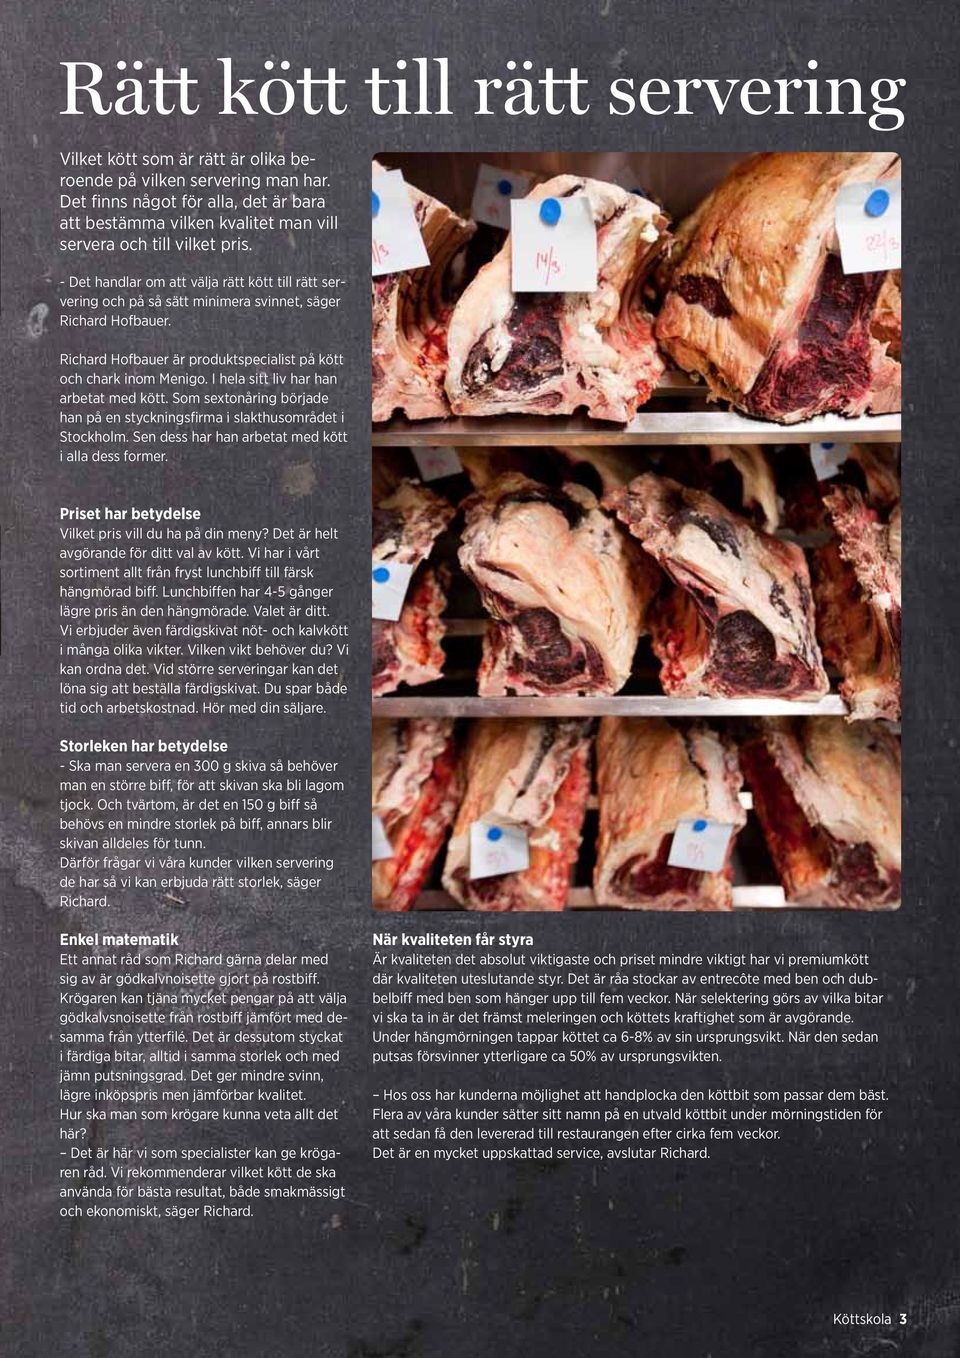 - Det handlar om att välja rätt kött till rätt servering och på så sätt minimera svinnet, säger Richard Hofbauer. Richard Hofbauer är produktspecialist på kött och chark inom Menigo.